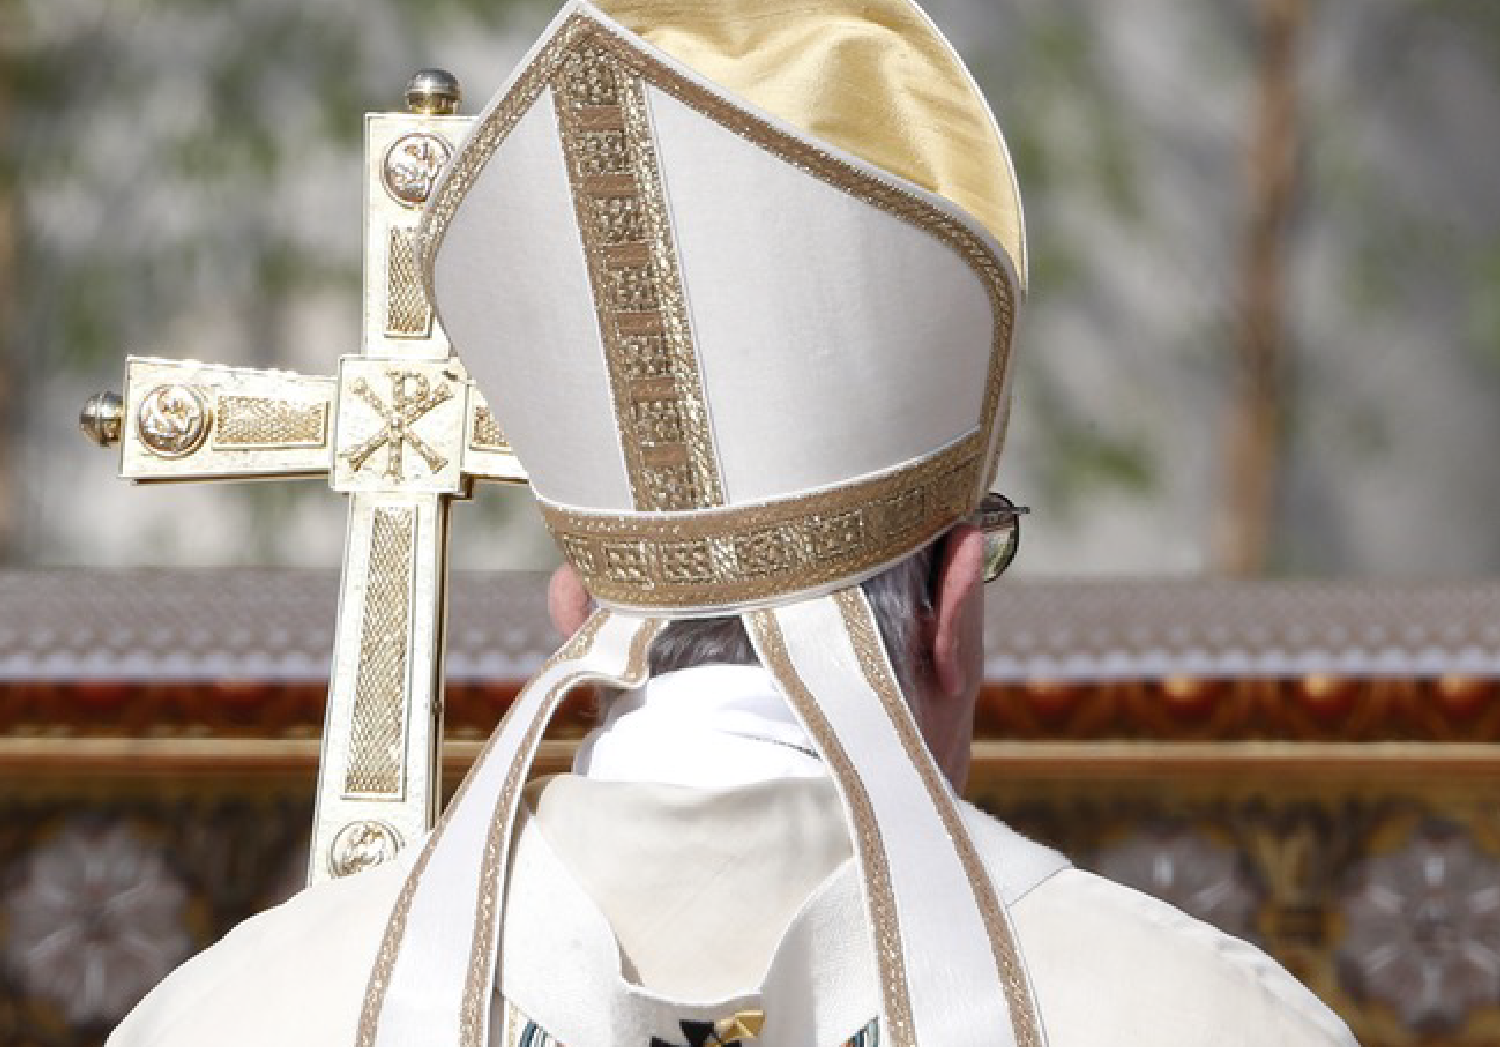 O que esperam os três cardeais portugueses da visita do Papa a Fátima